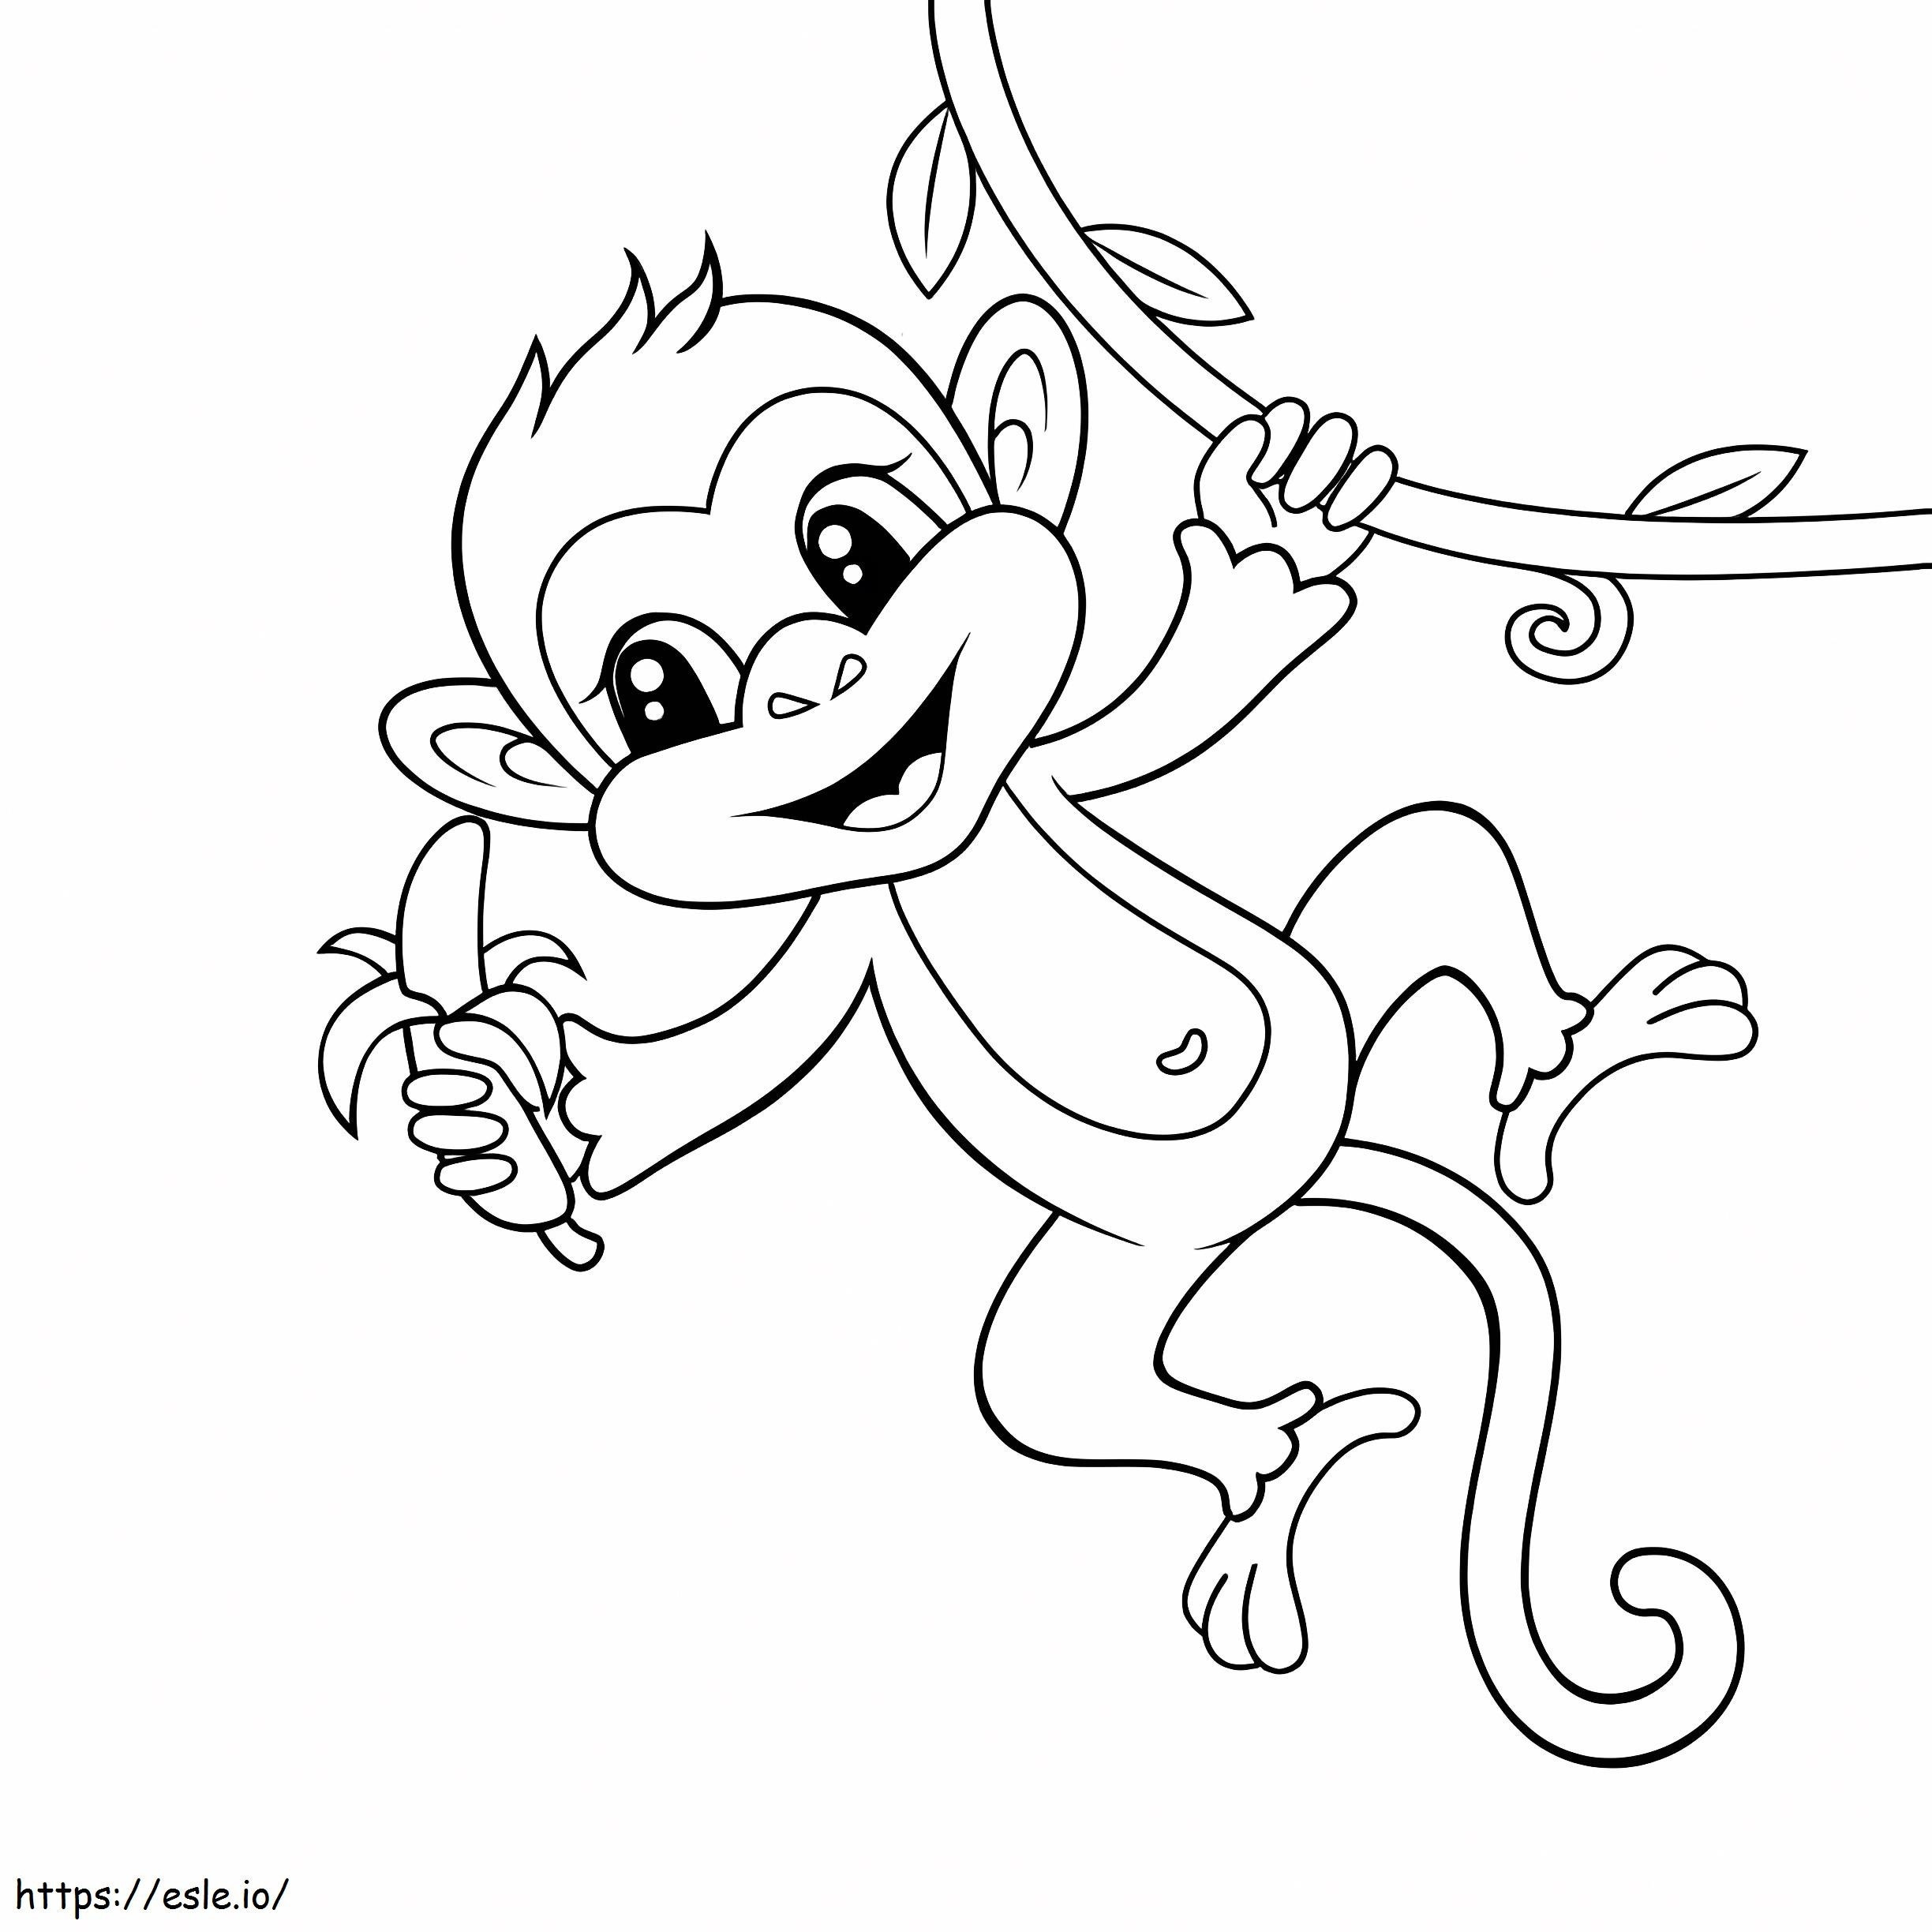 Małpa Trzyma Banana I Wspinaczka kolorowanka